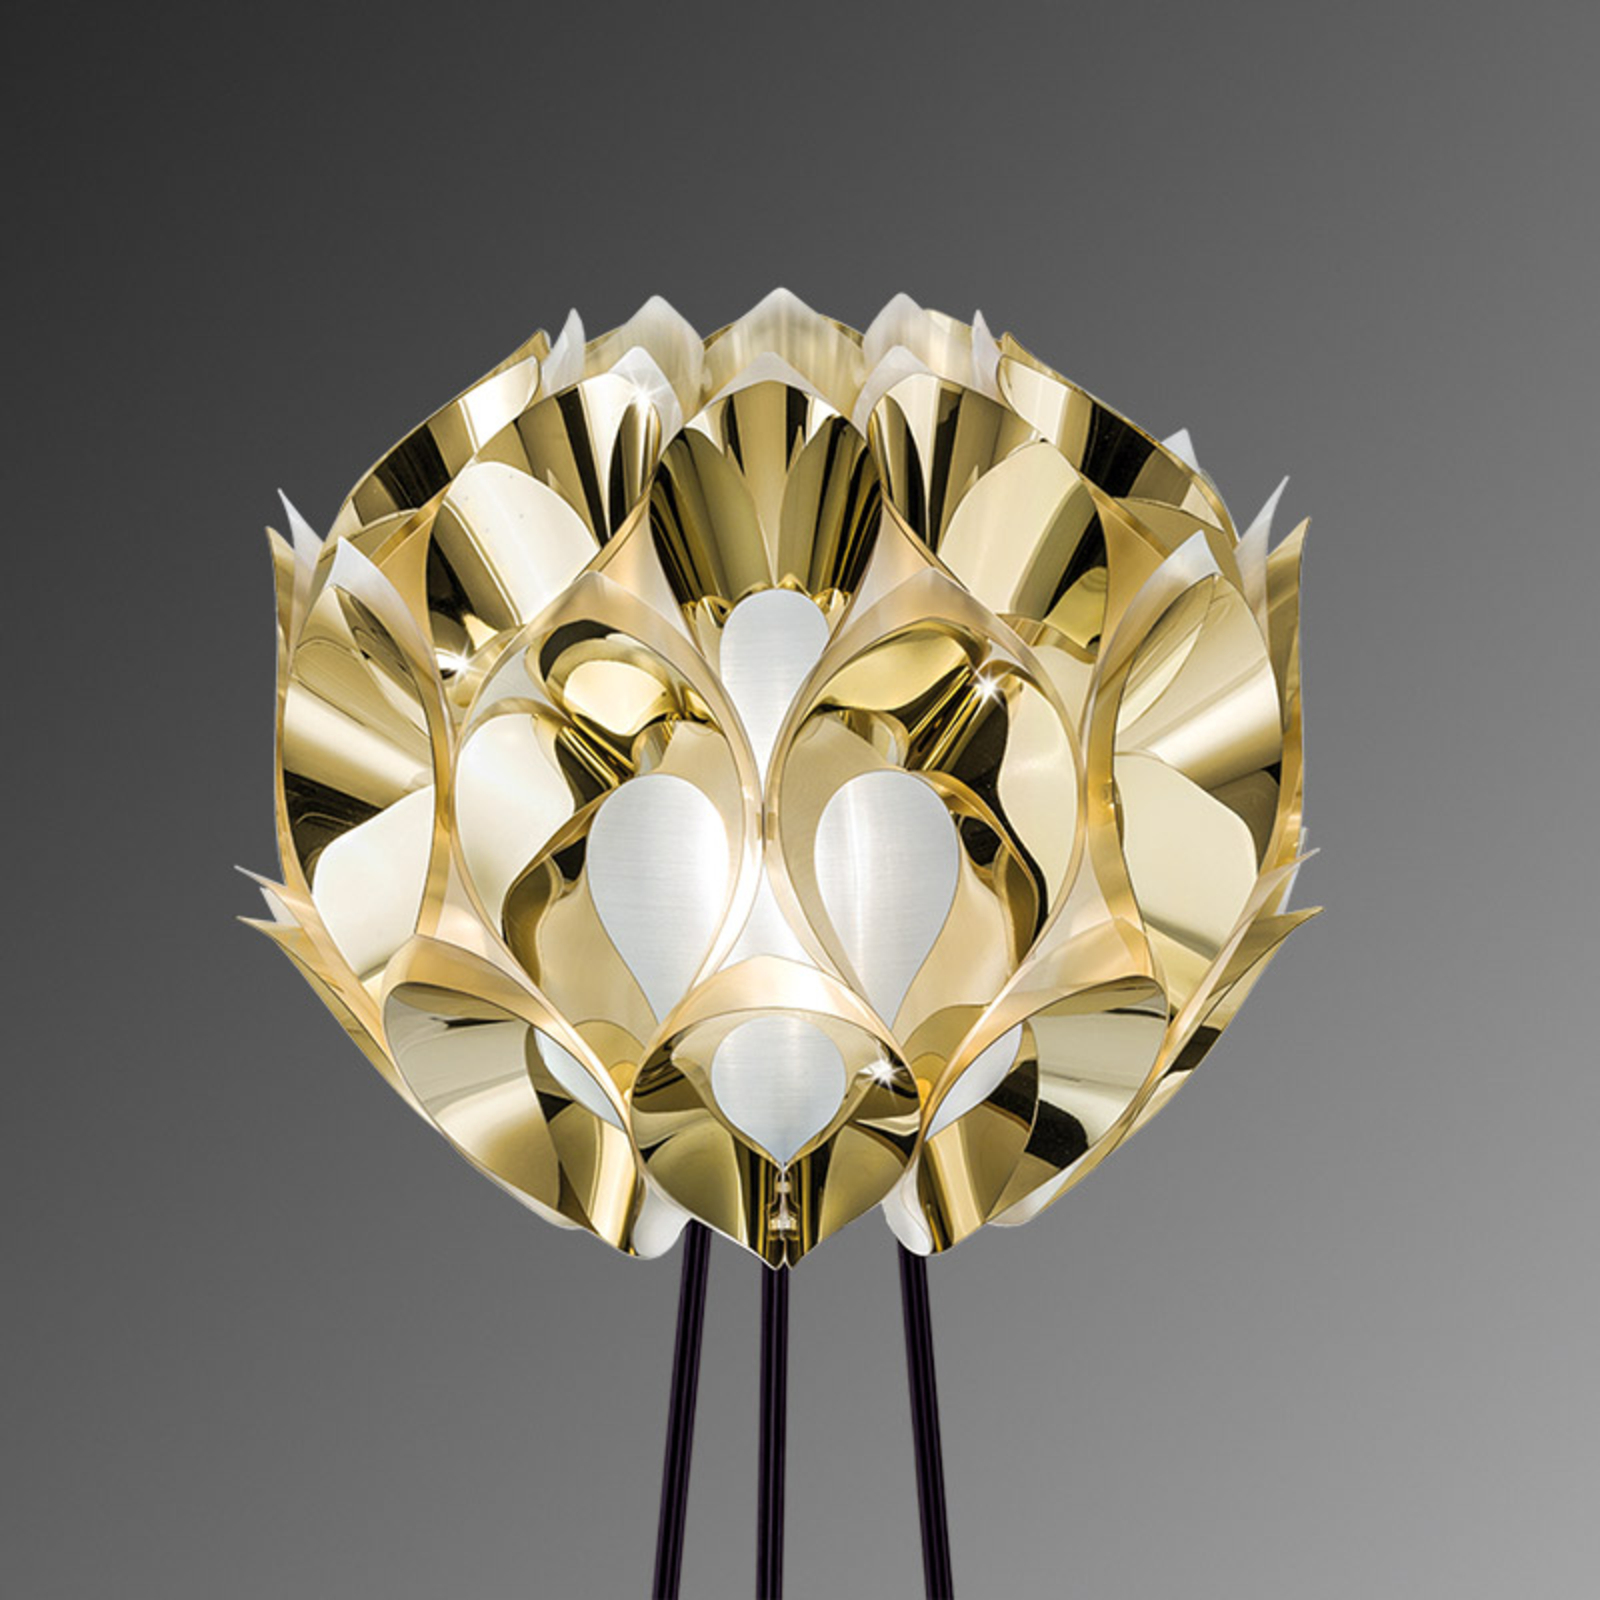 Slamp Flora - designová stojací lampa, zlatá